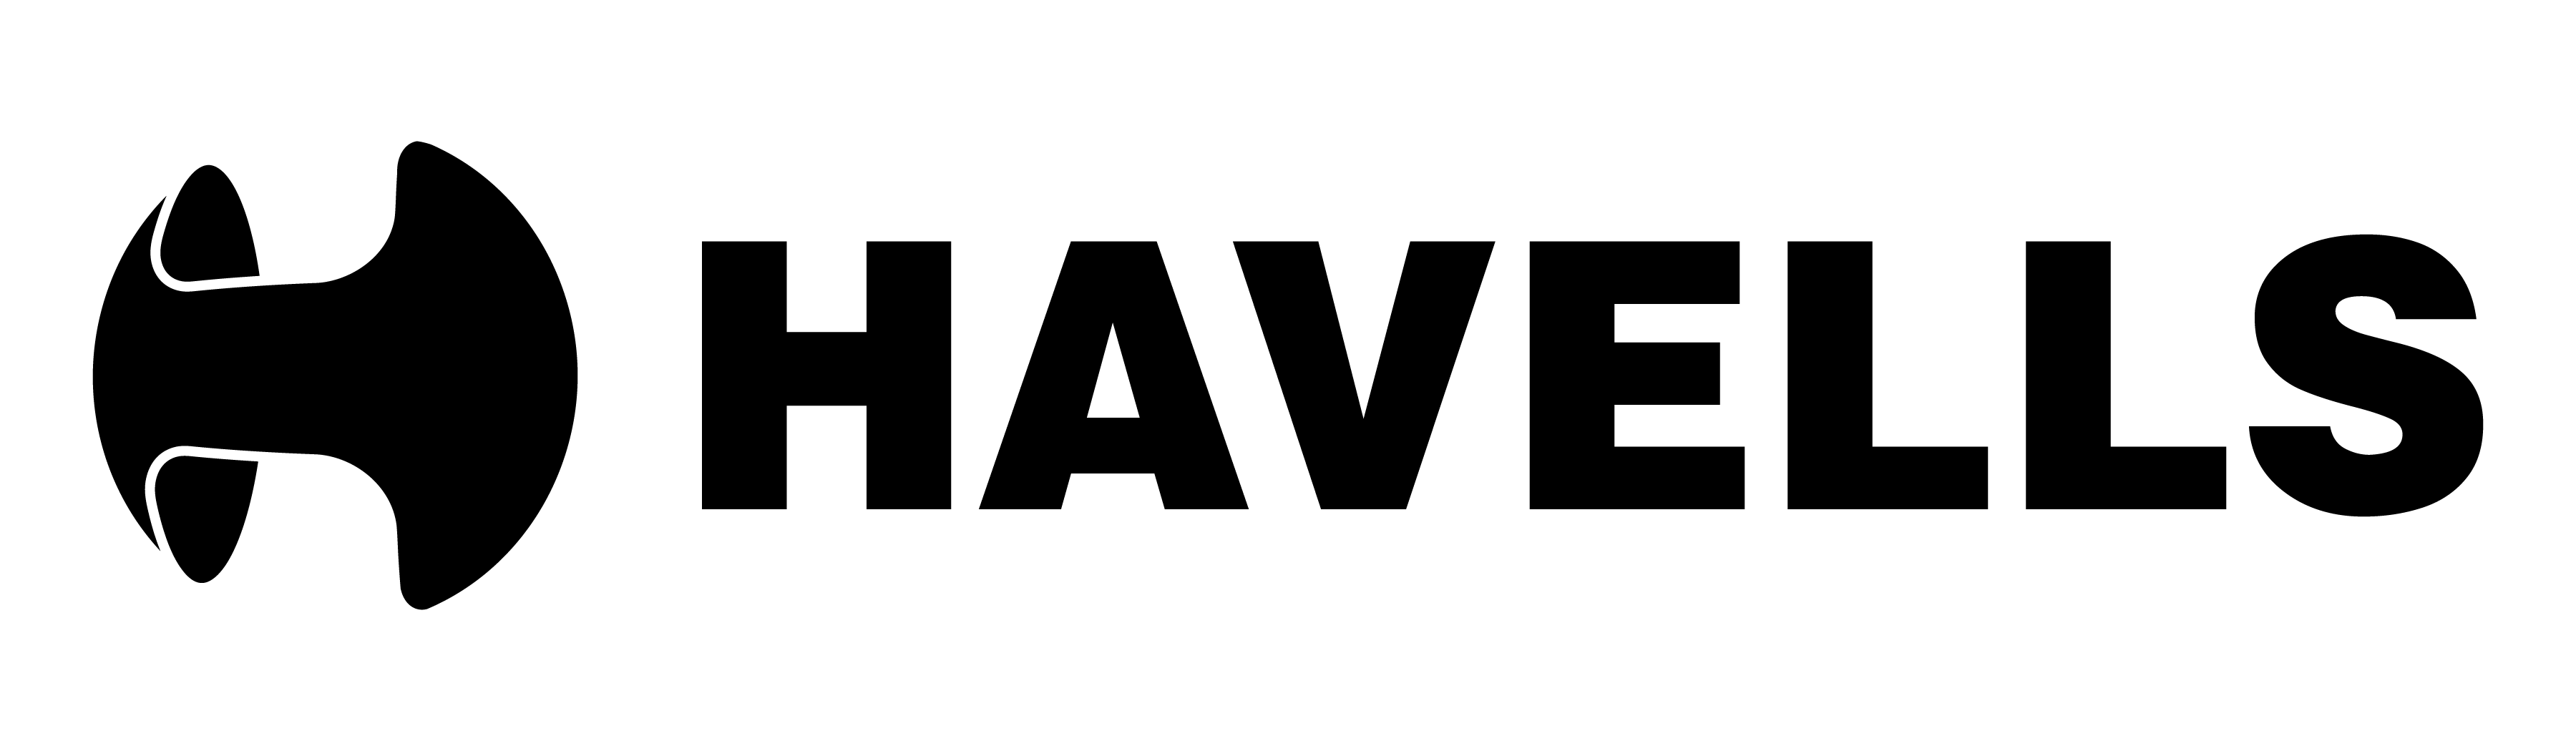 Havells Logo - Havells logo png 7 » PNG Image